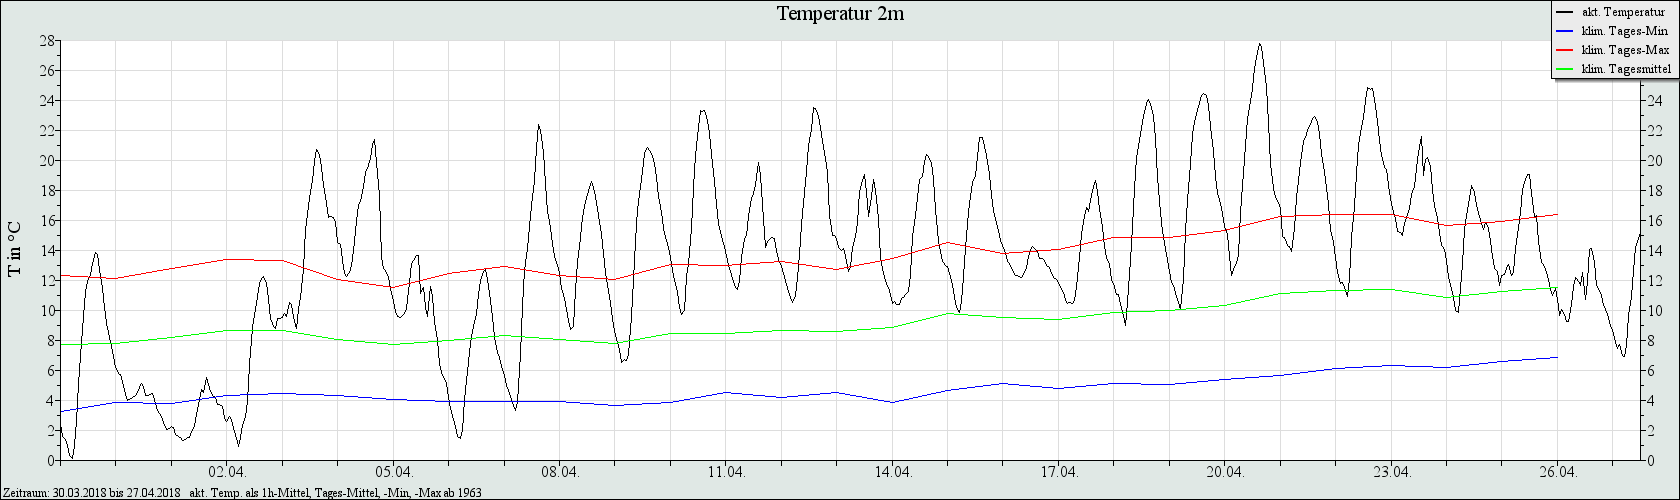 Temperaturverlauf der letzten 4 Wochen am LIM